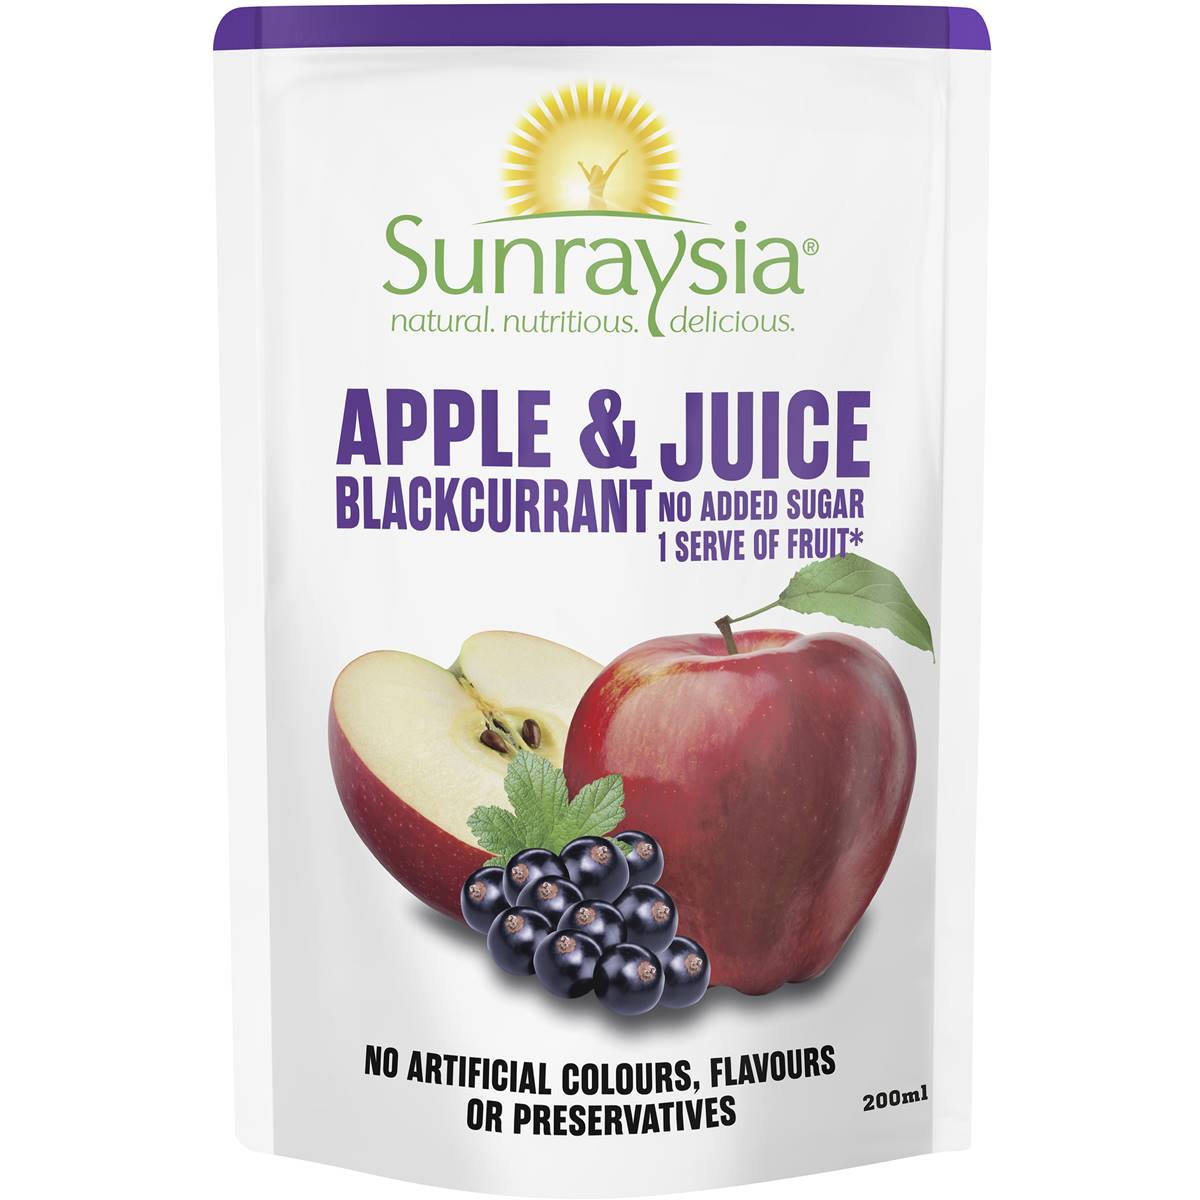 Calories in Sunraysia Apple & Blackcurrant Juice